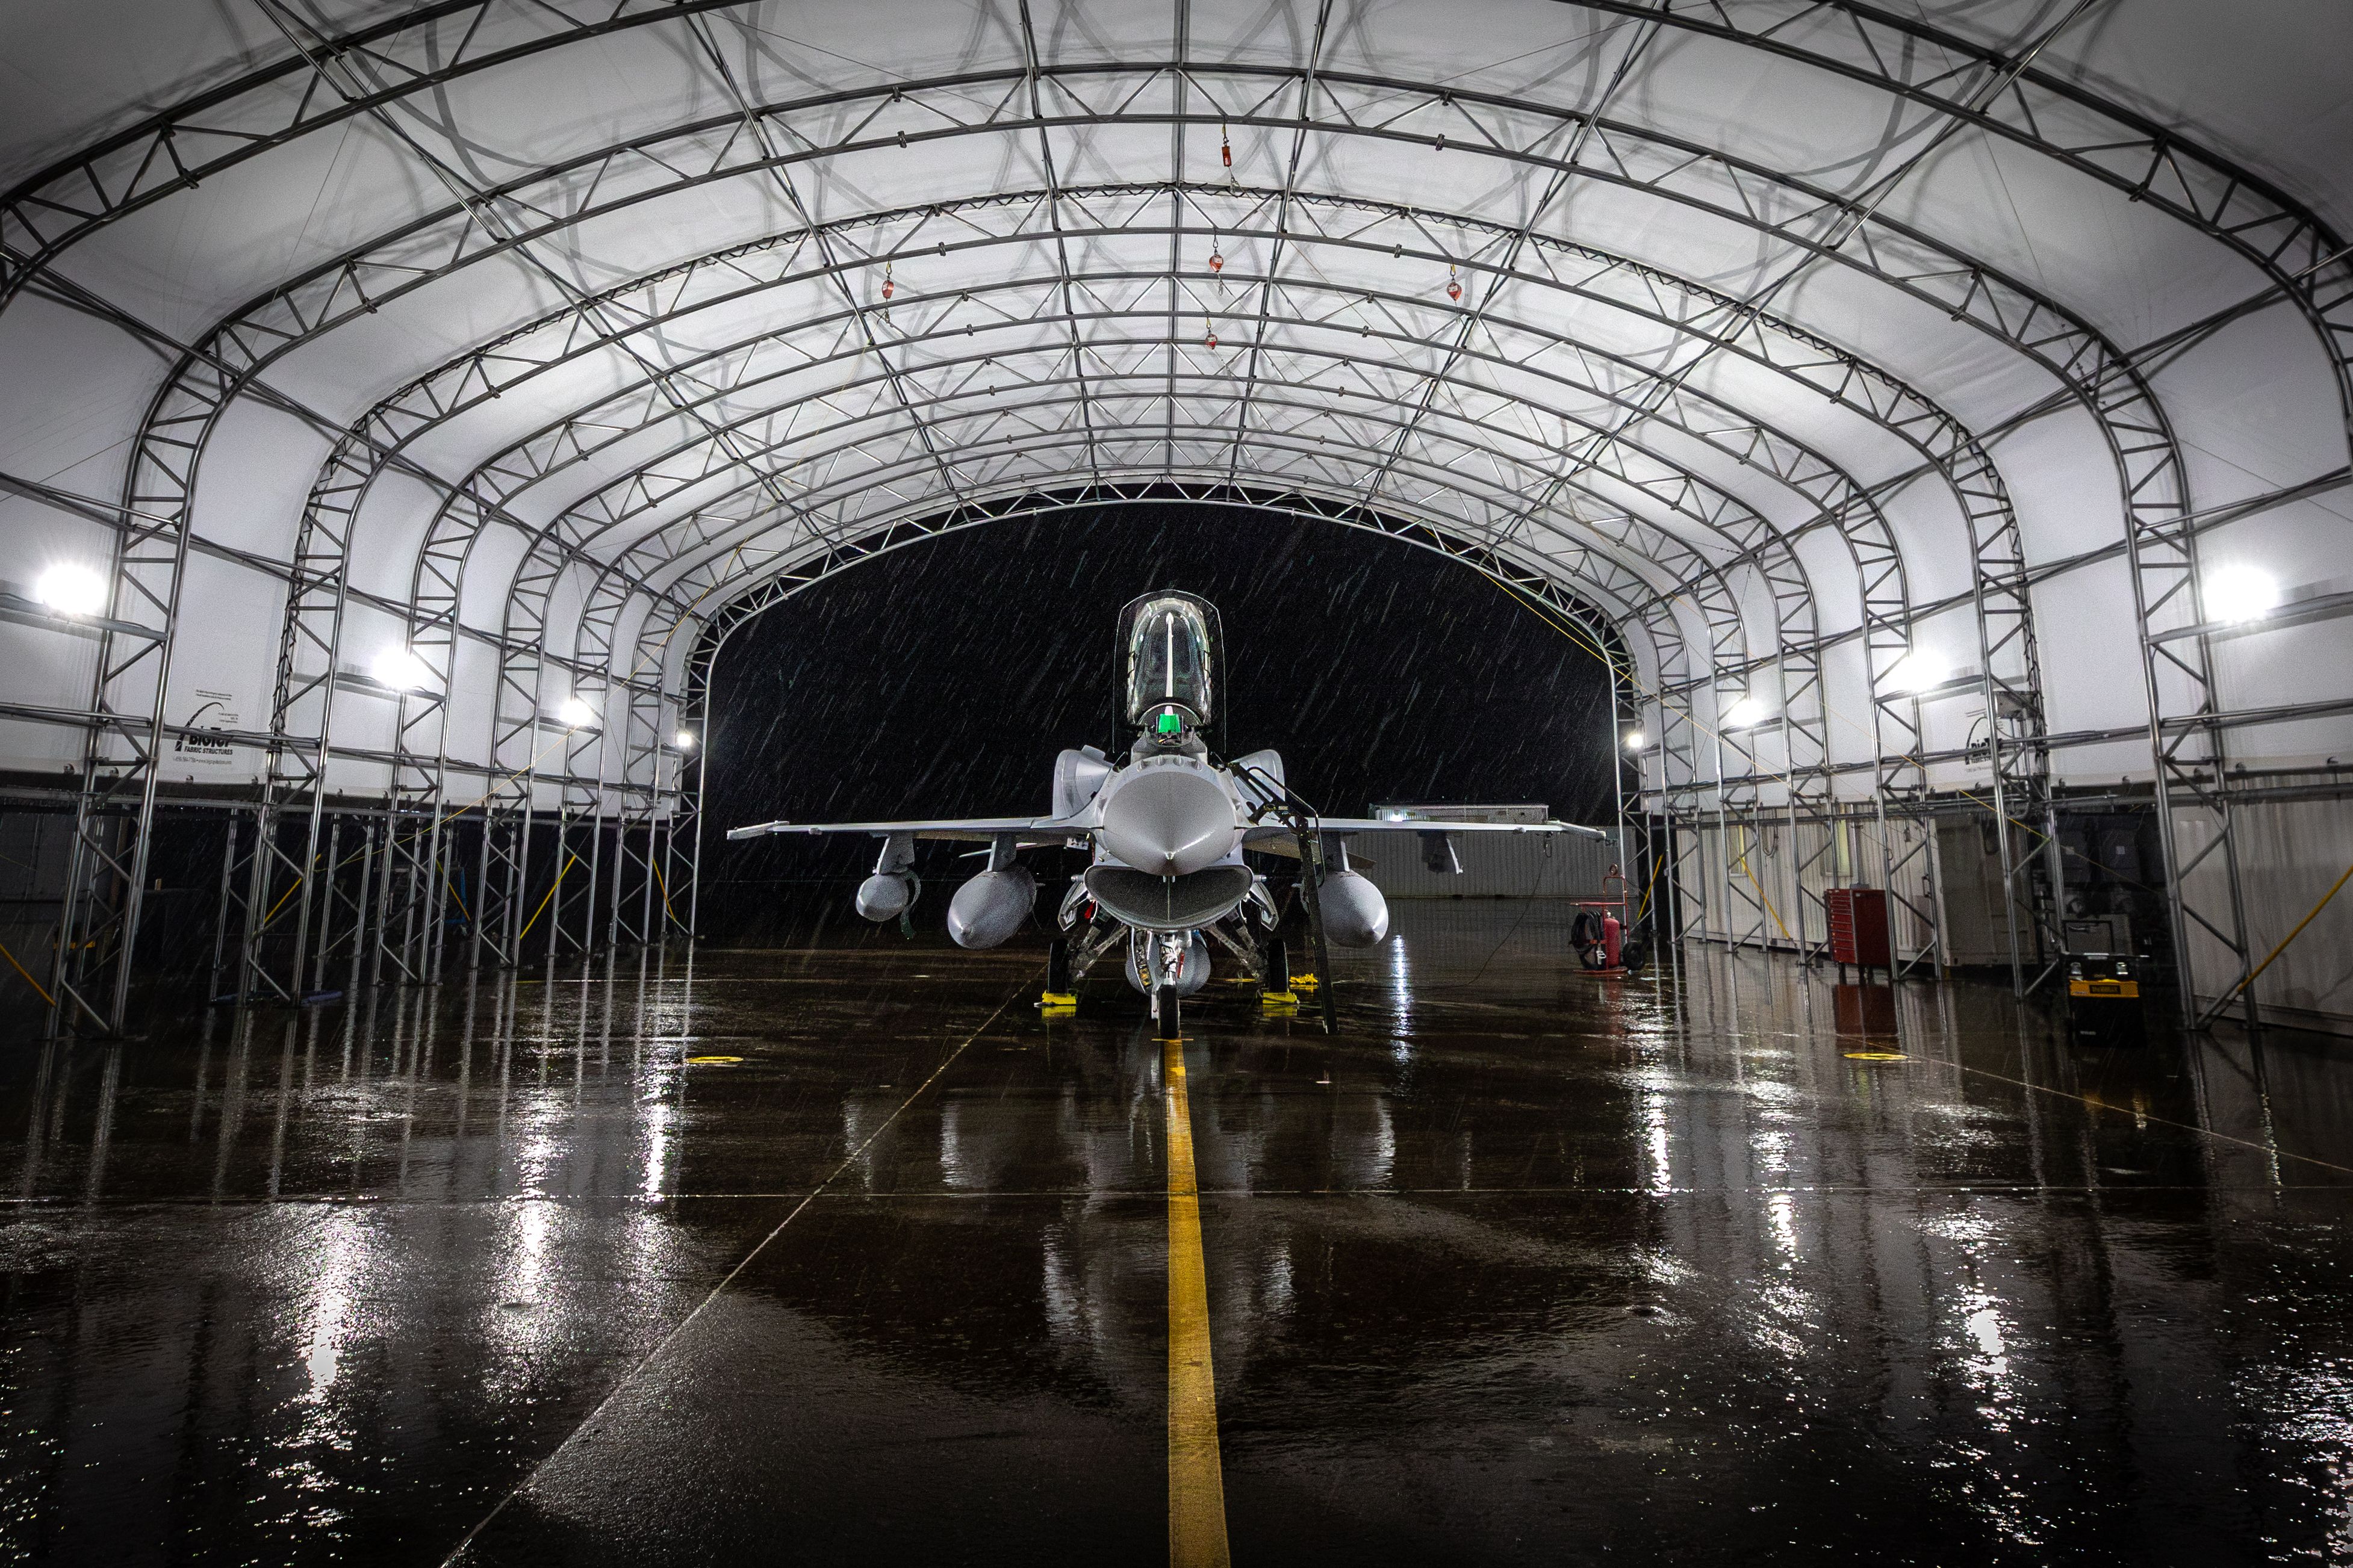 An F-16 Block 70 parked in a hangar.